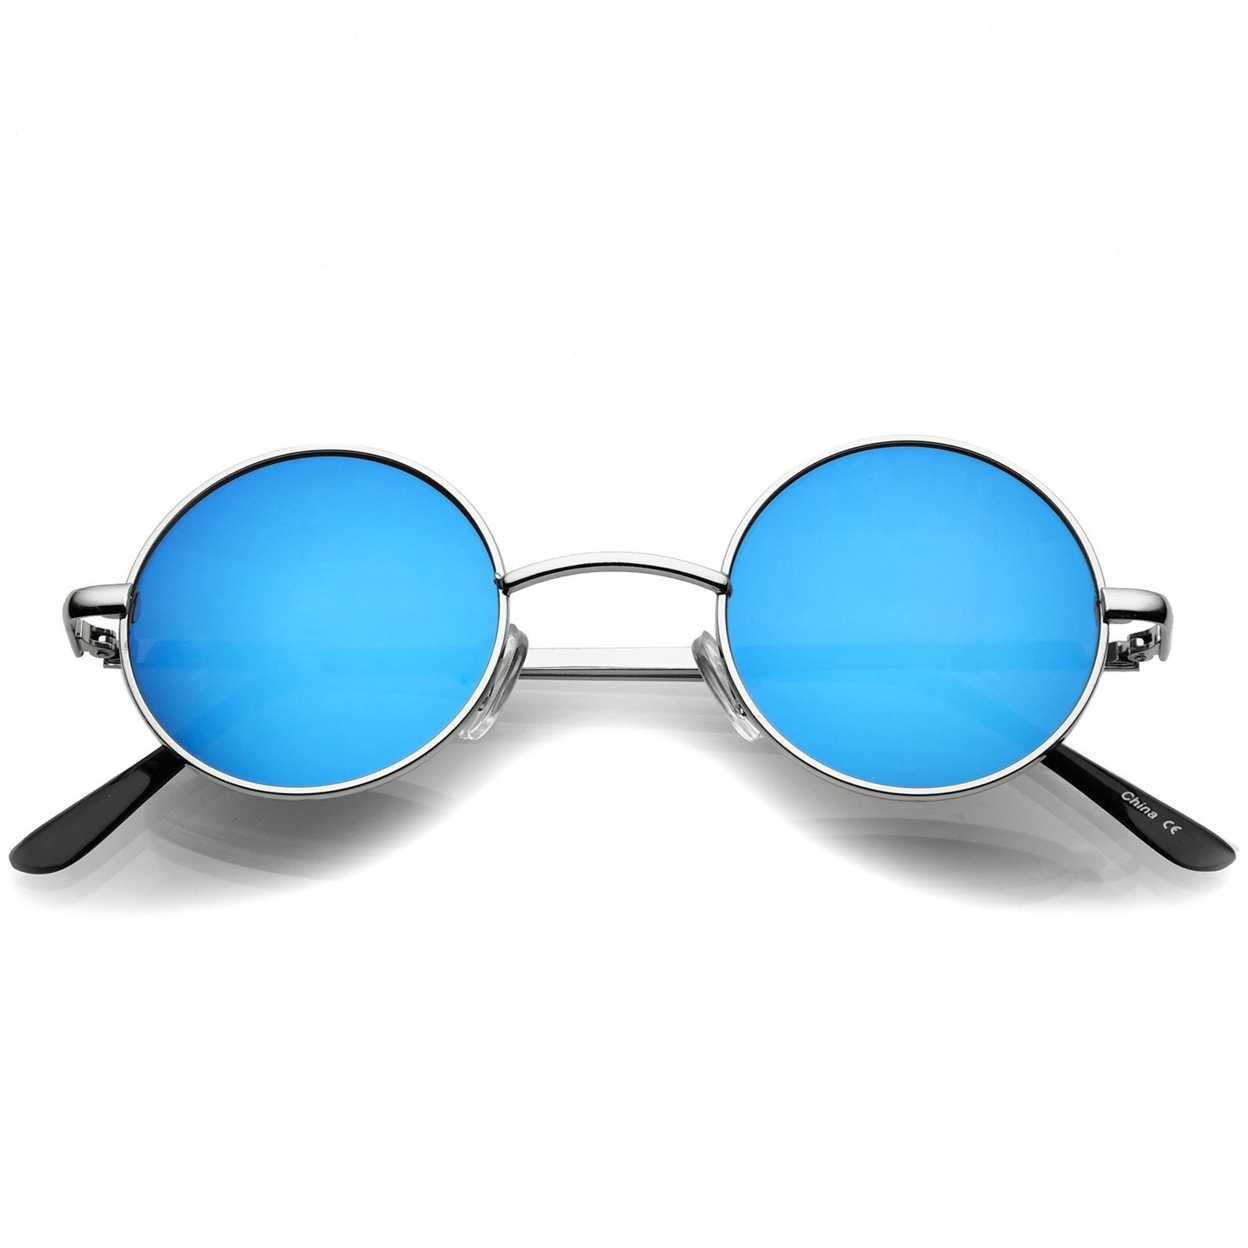 Small Retro Lennon Style Colored Mirror Lens Round Metal Sunglasses 41mm - Silver / Magenta-Orange Mirror